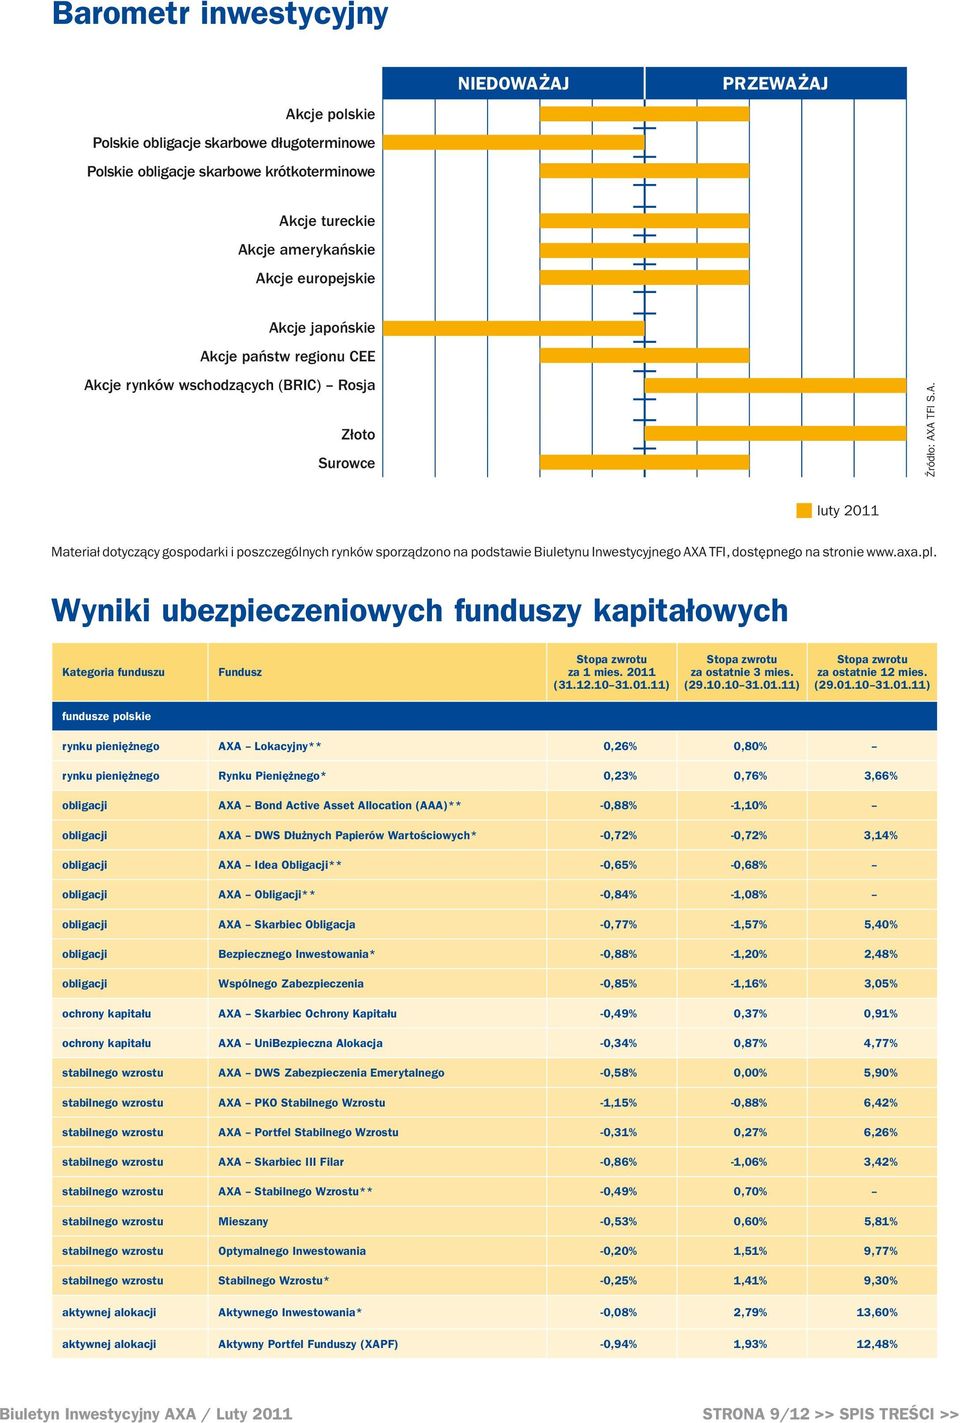 axa.pl. Wyniki ubezpieczeniowych funduszy kapitałowych Kategoria funduszu fundusze polskie Fundusz za 1 mies. 2011